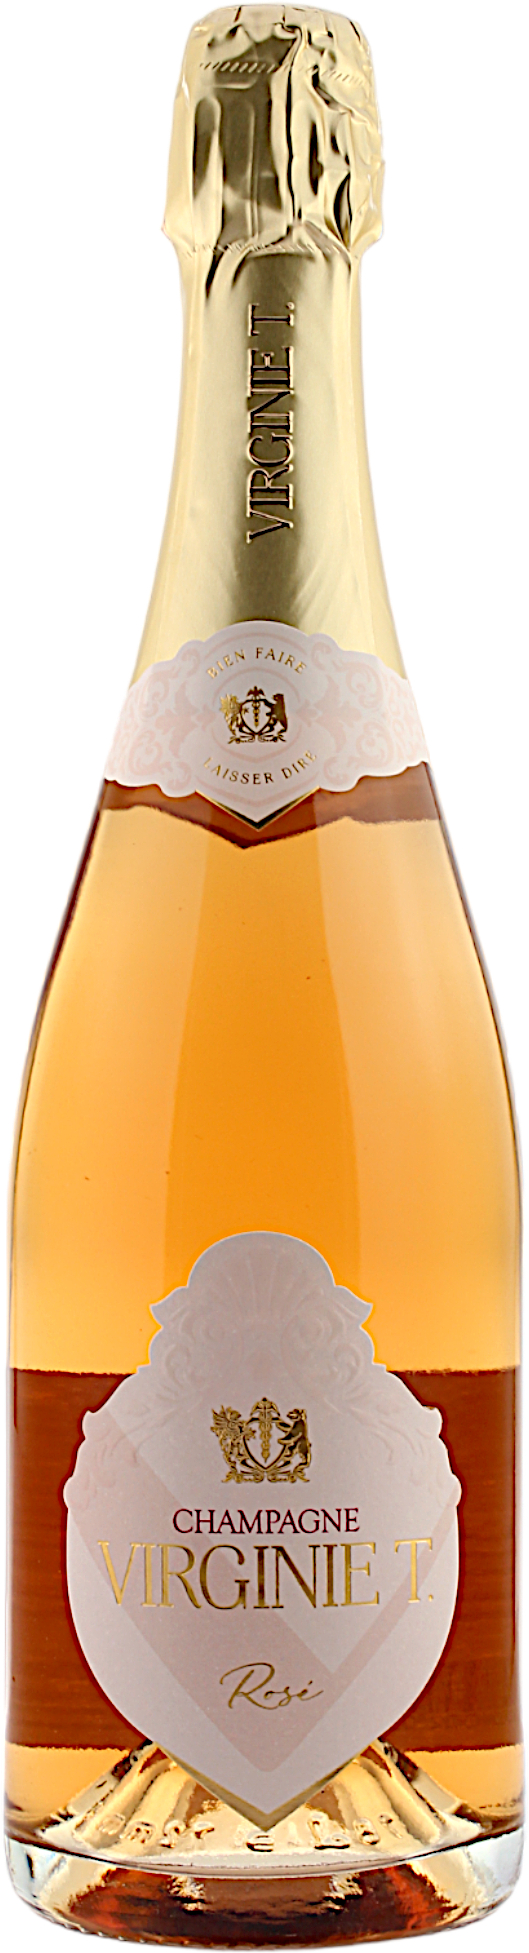 Champagne Virginie T.  Rosé 12.5% 0,75l